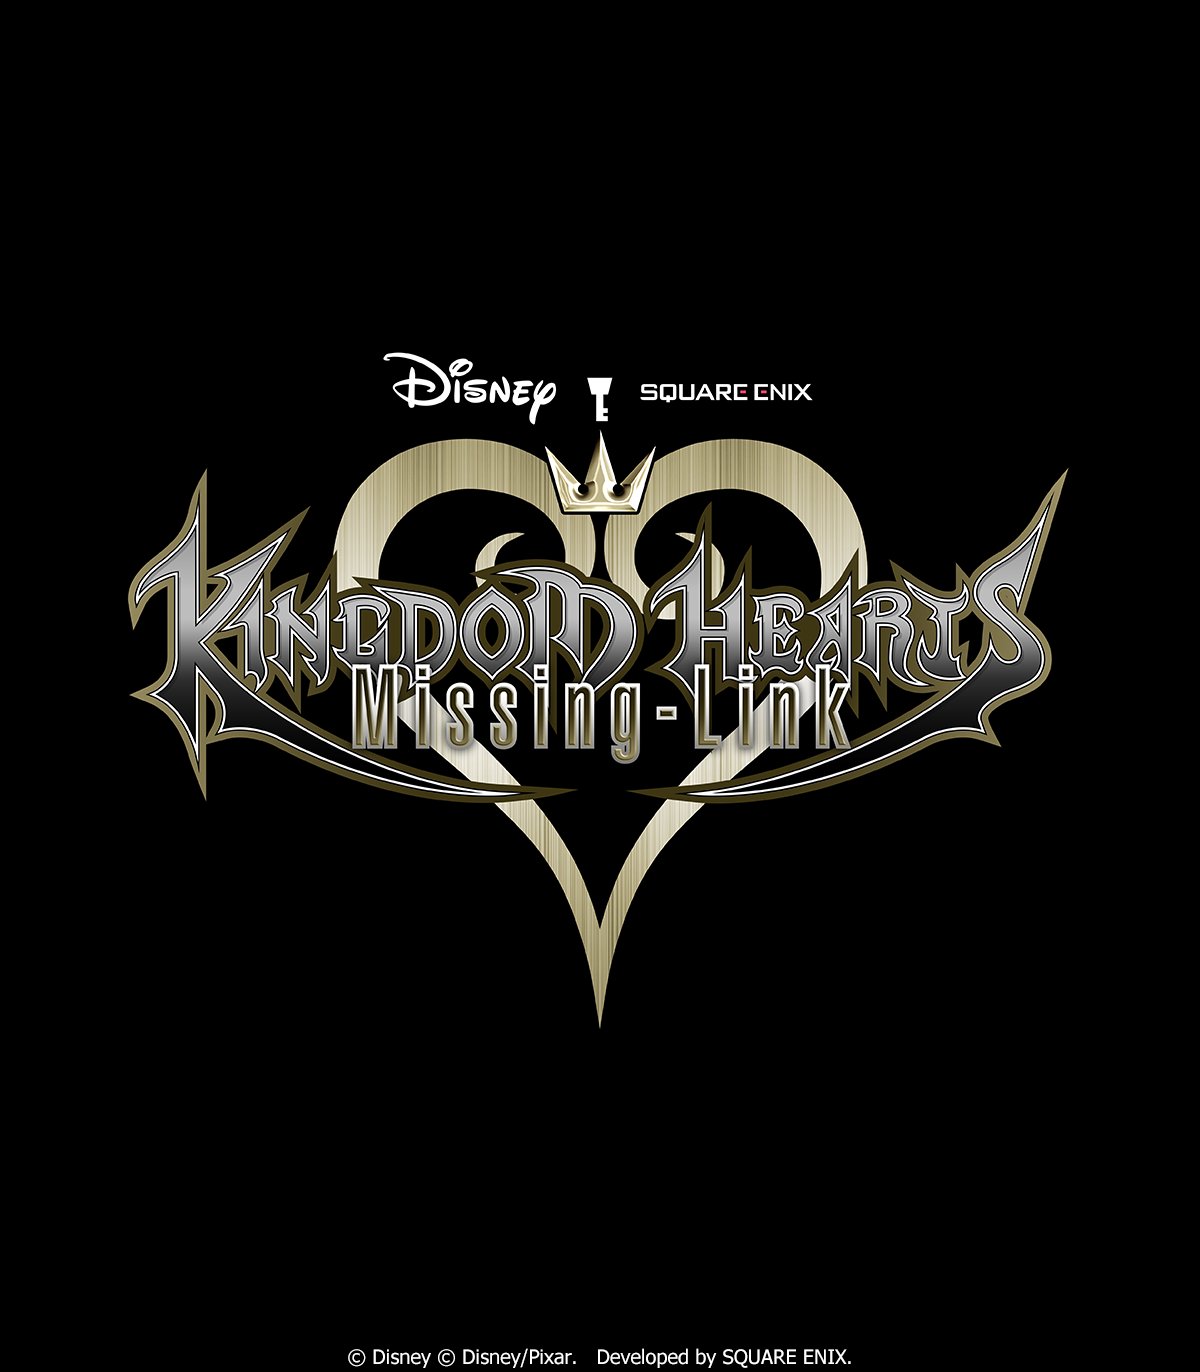 Square Enix celebrates series 20th anniversary with Kingdom Hearts 4  announcement - Xfire